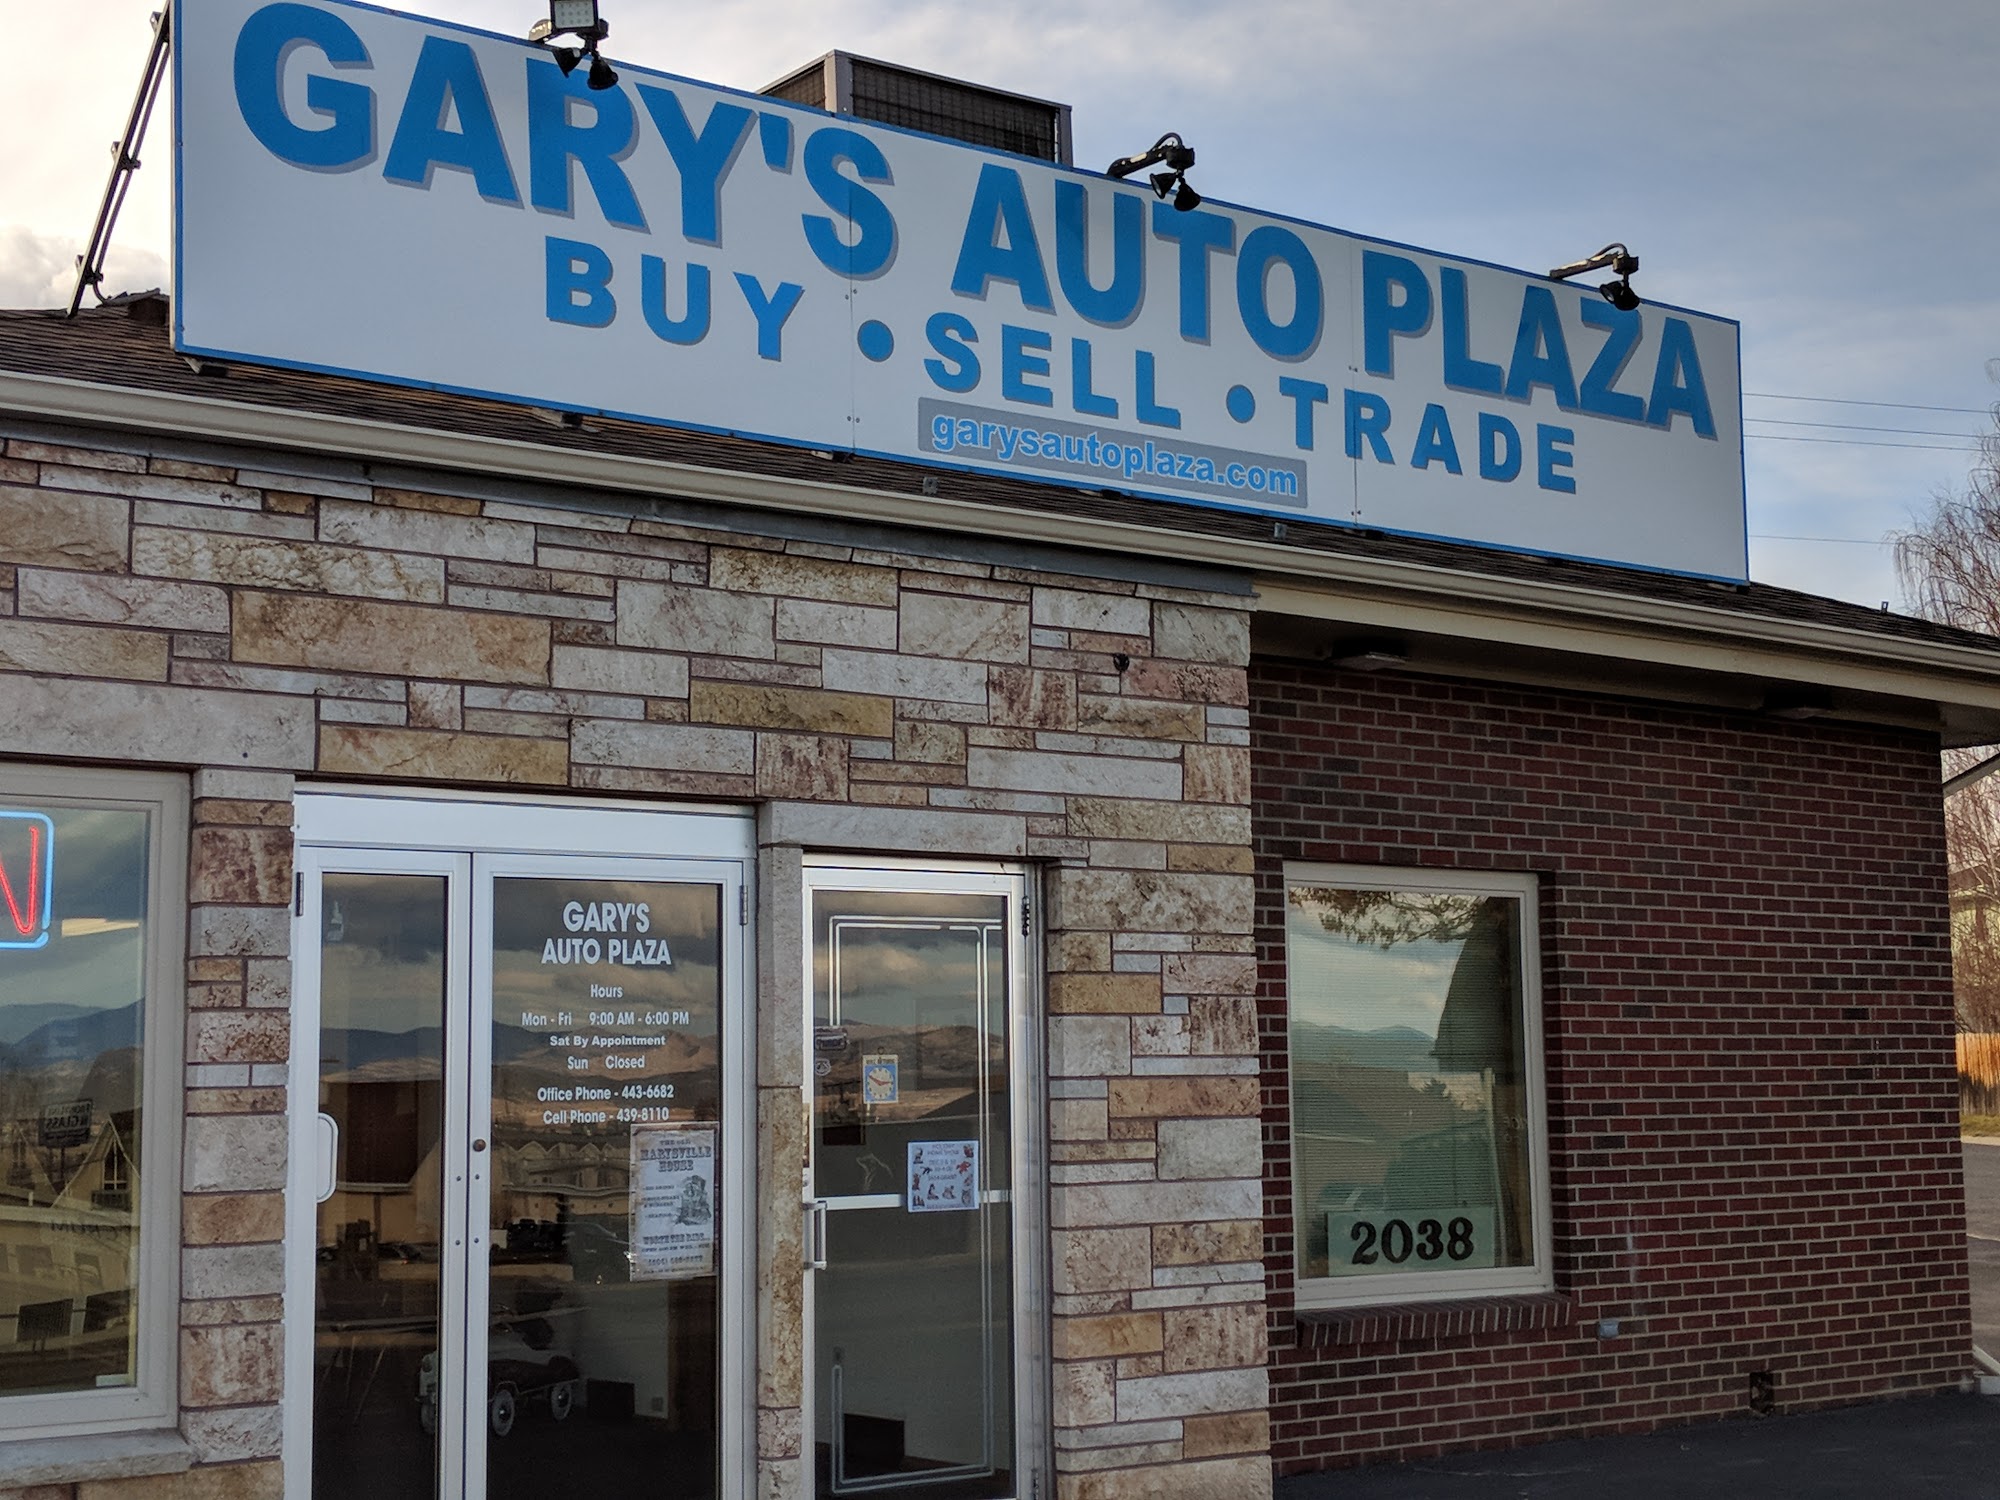 Gary's Auto Plaza